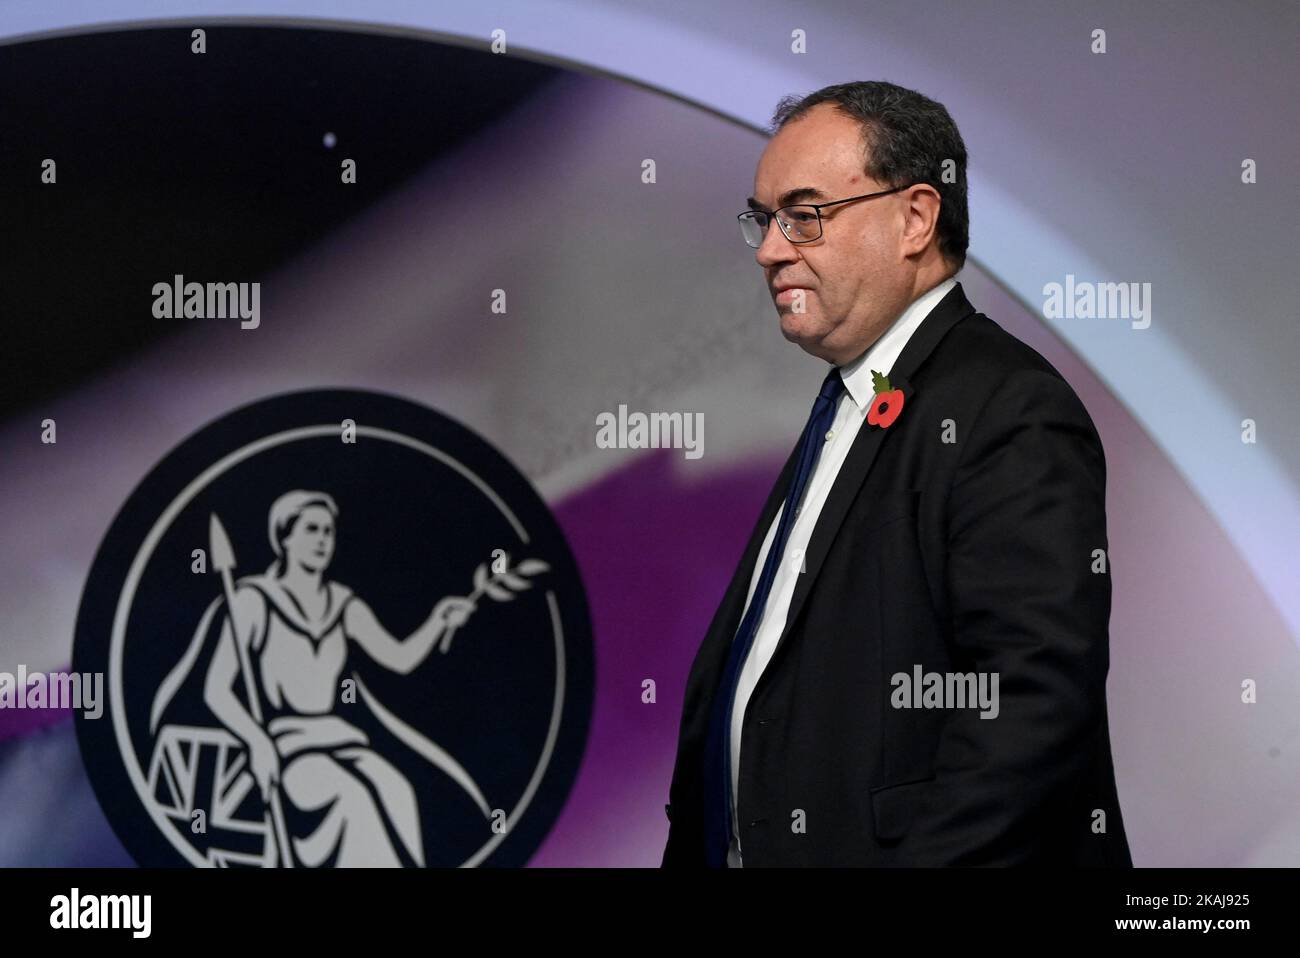 Andrew Bailey, gobernador del Banco de Inglaterra, durante una conferencia de prensa para la publicación del Informe de Política Monetaria, en el Banco de Inglaterra, Londres. Fecha de la foto: Jueves 3 de noviembre de 2022. Foto de stock